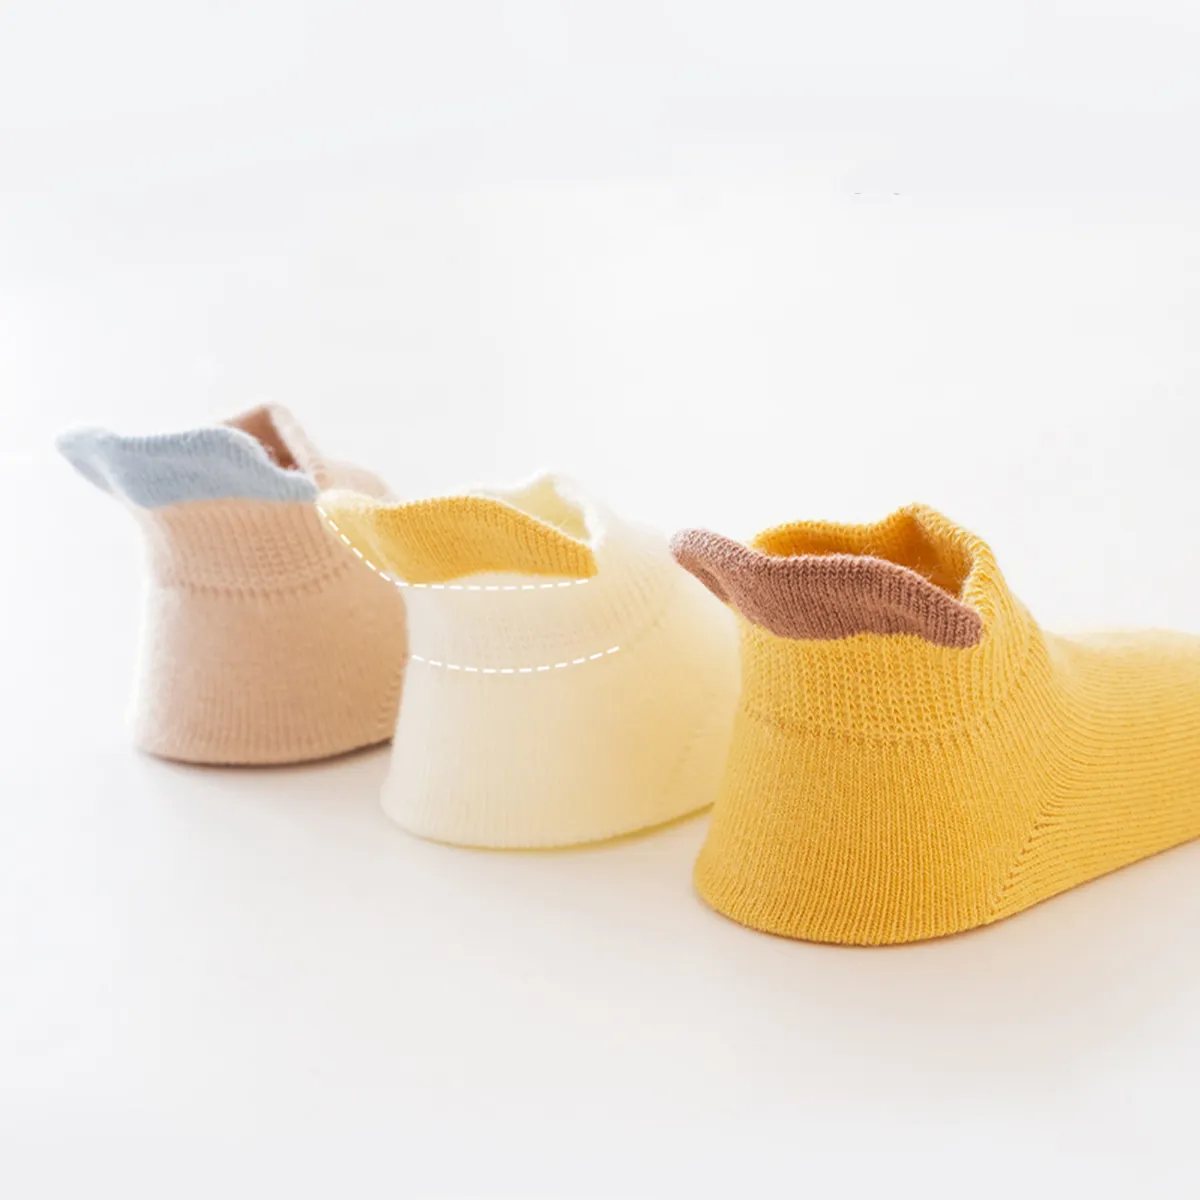 Calcetines de piso casuales de color caramelo para bebés / niños pequeños en material de algodón peinado Amarillo big image 1